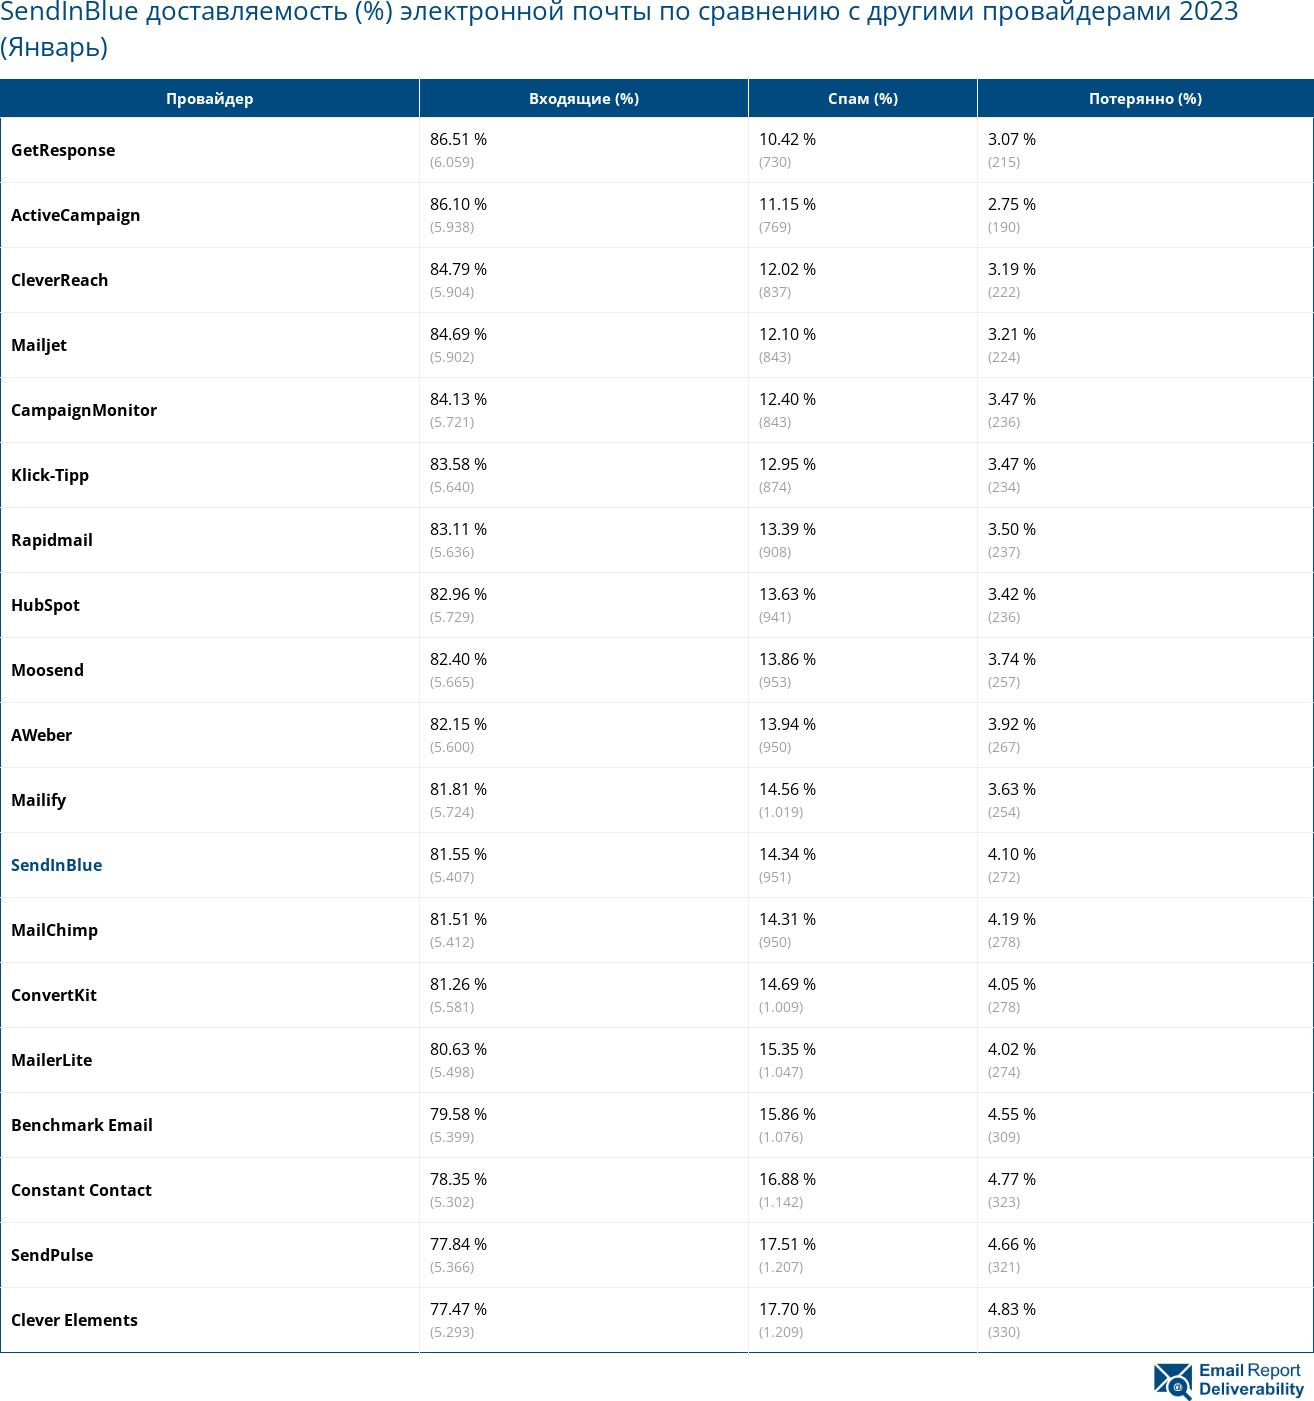 SendInBlue доставляемость (%) электронной почты по сравнению с другими провайдерами 2023 (Январь)